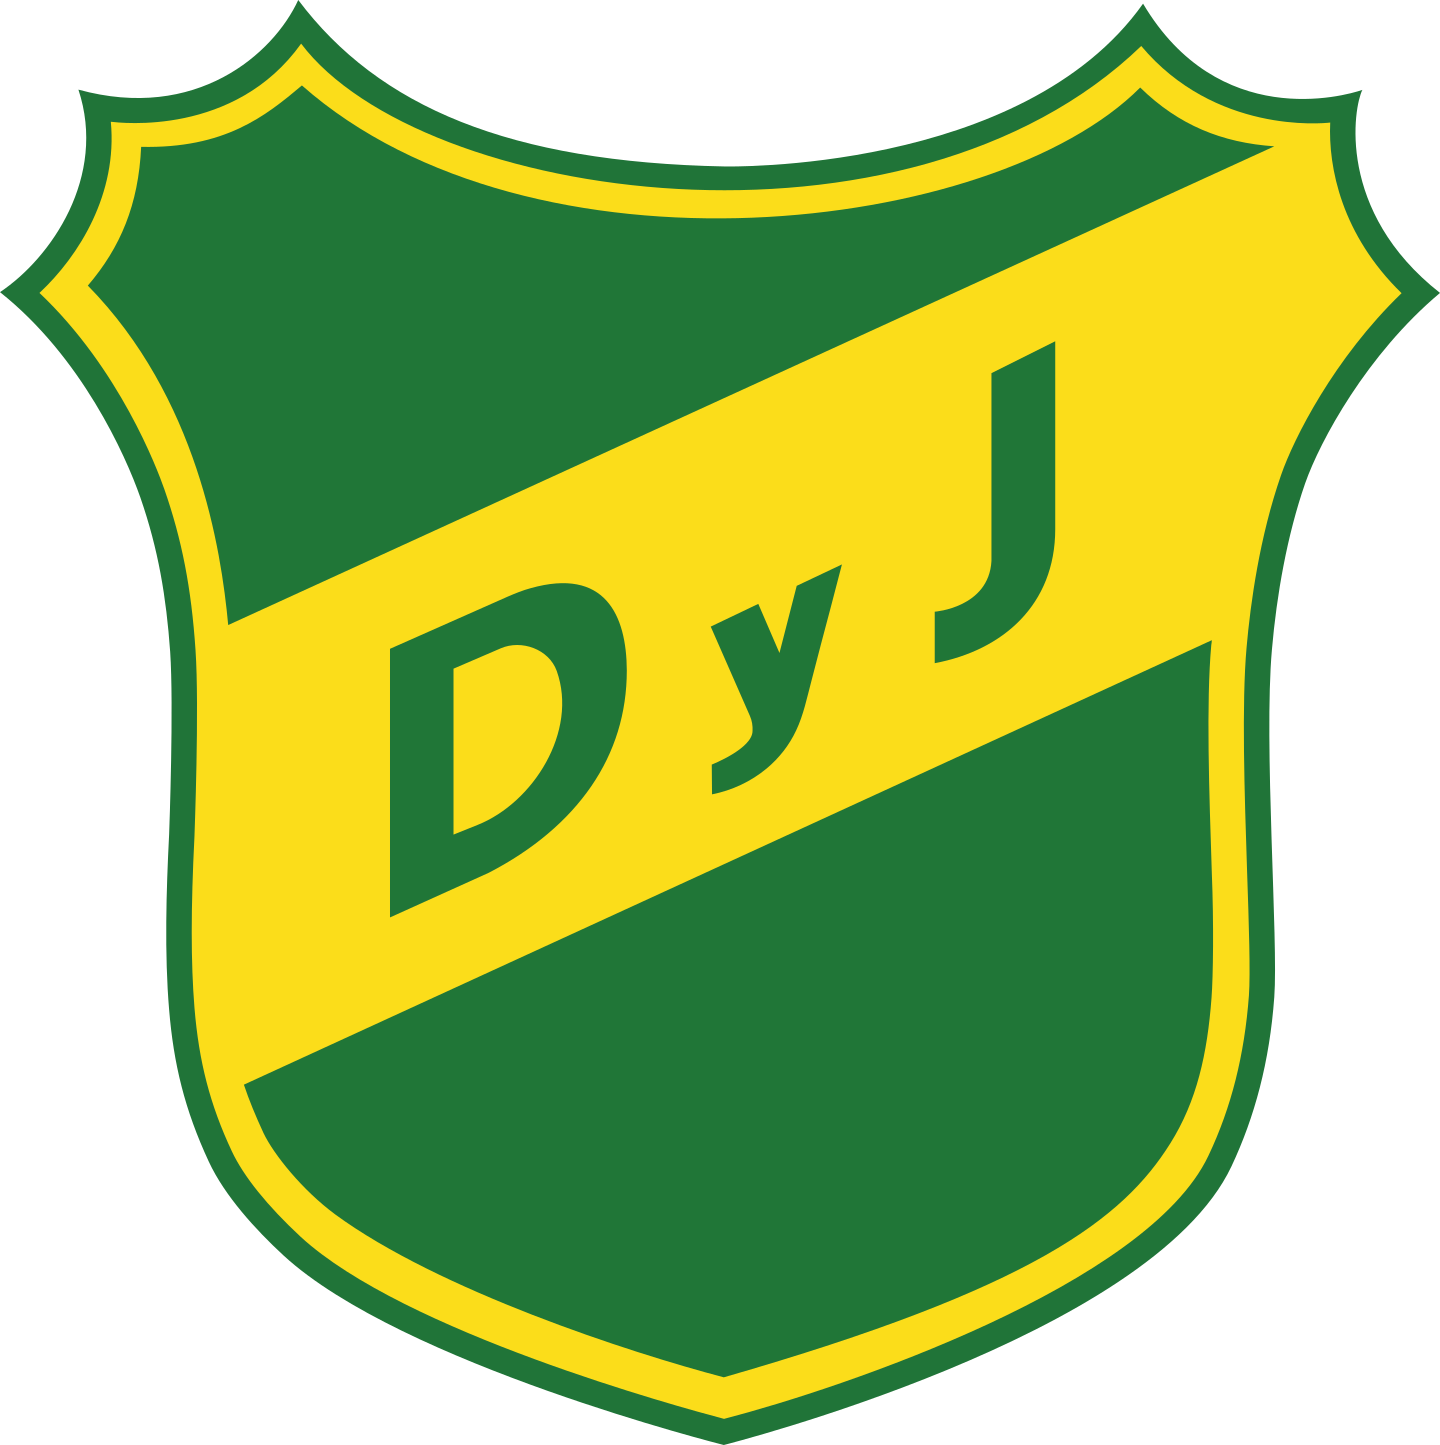 defensa y justicia logo 2 - Defensa y Justicia Logo